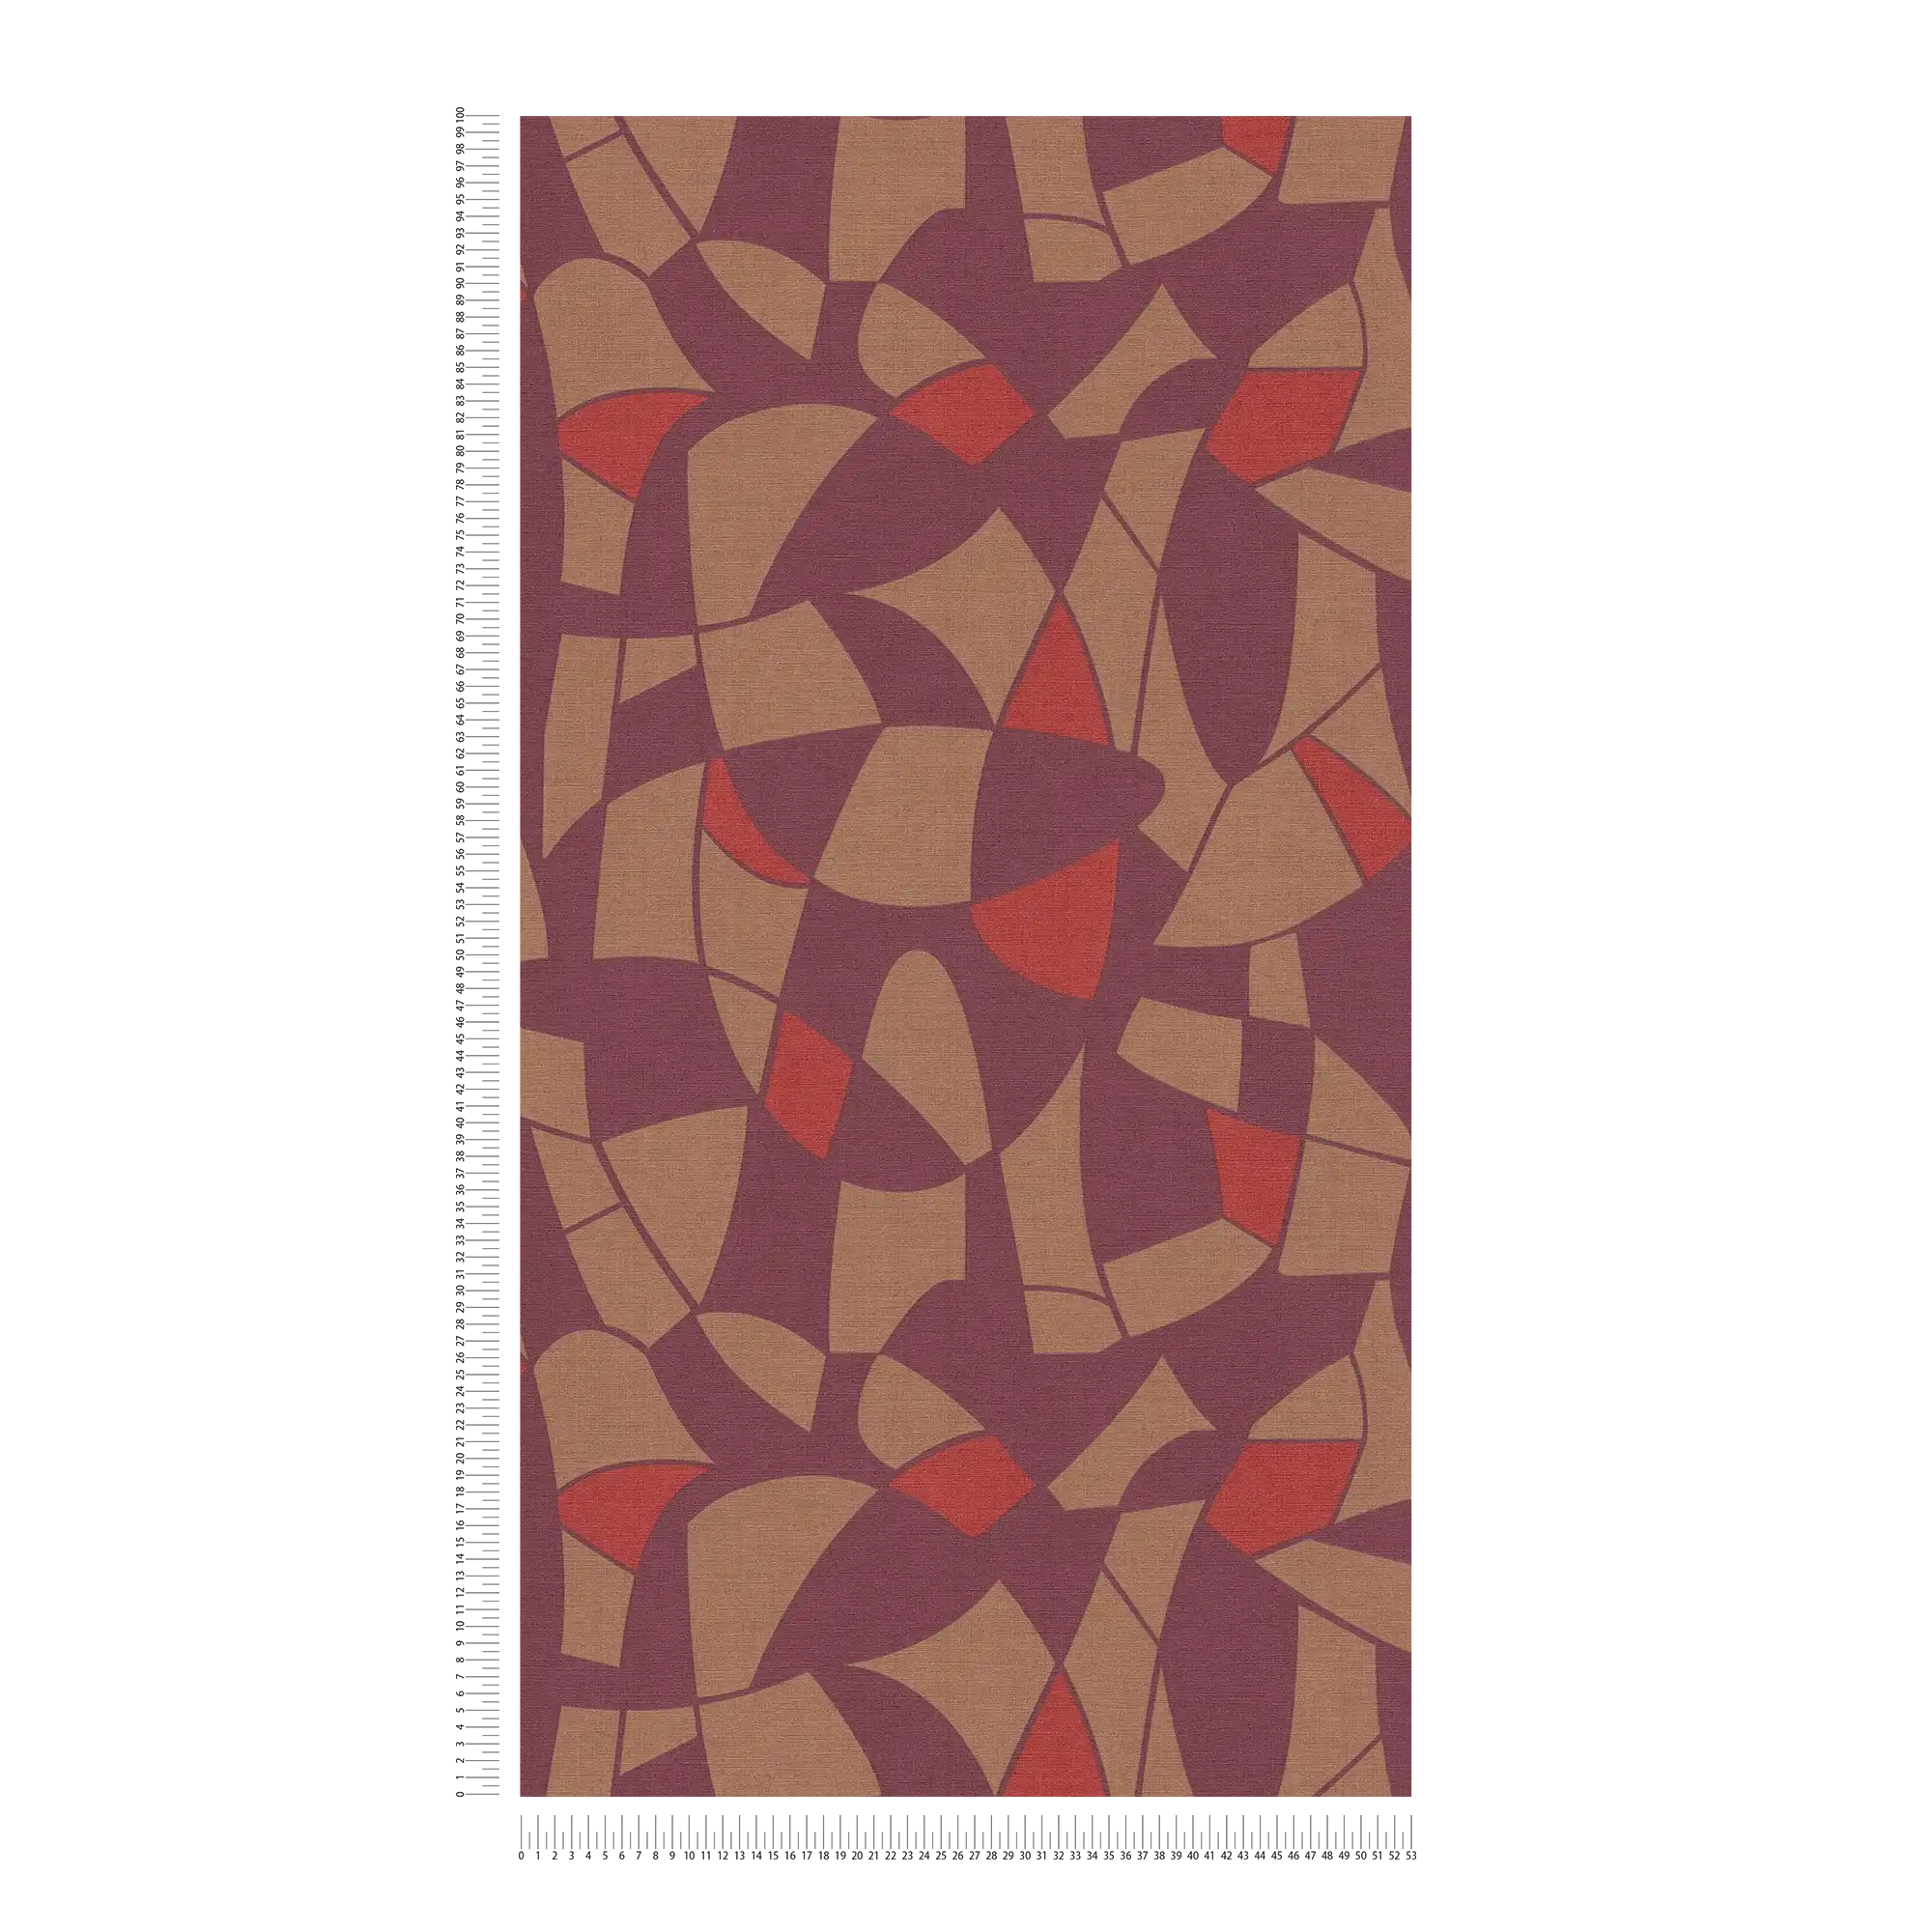             Vliesbehang in donkere kleuren in een abstract patroon - paars, bruin, rood
        